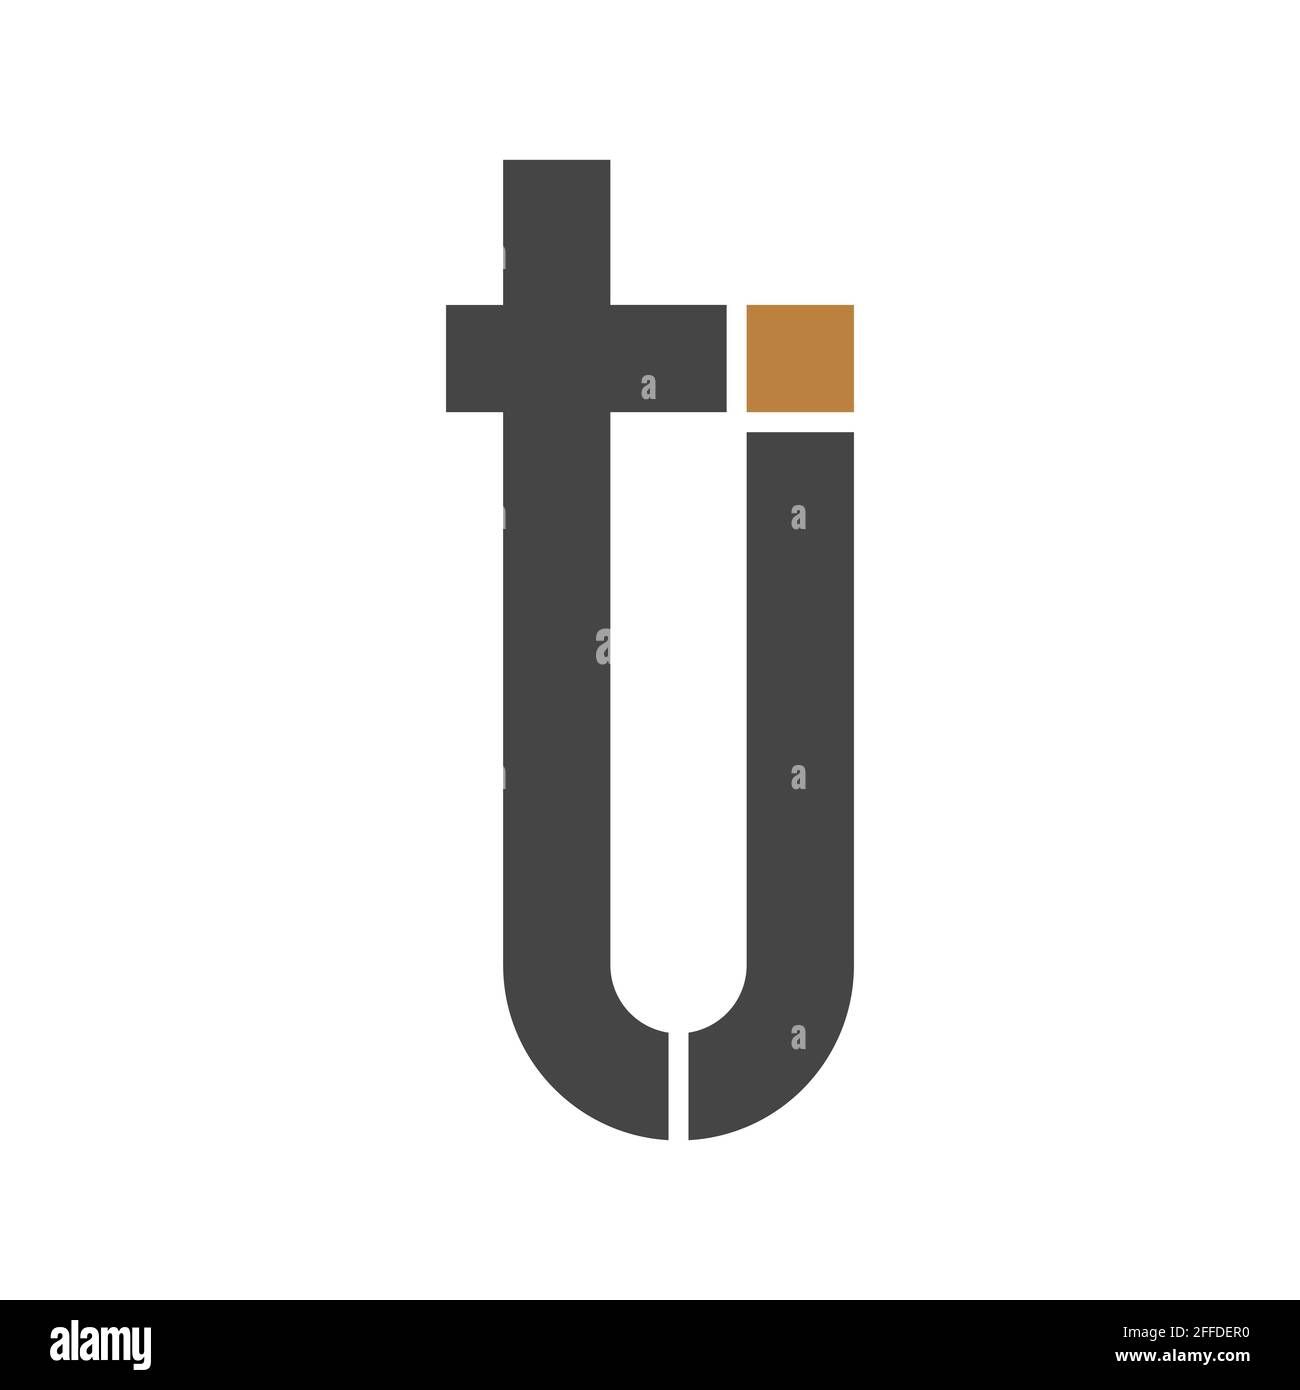 Disegno iniziale del modello vettoriale del logo della lettera tj. Logo jt con lettera collegata. Illustrazione Vettoriale